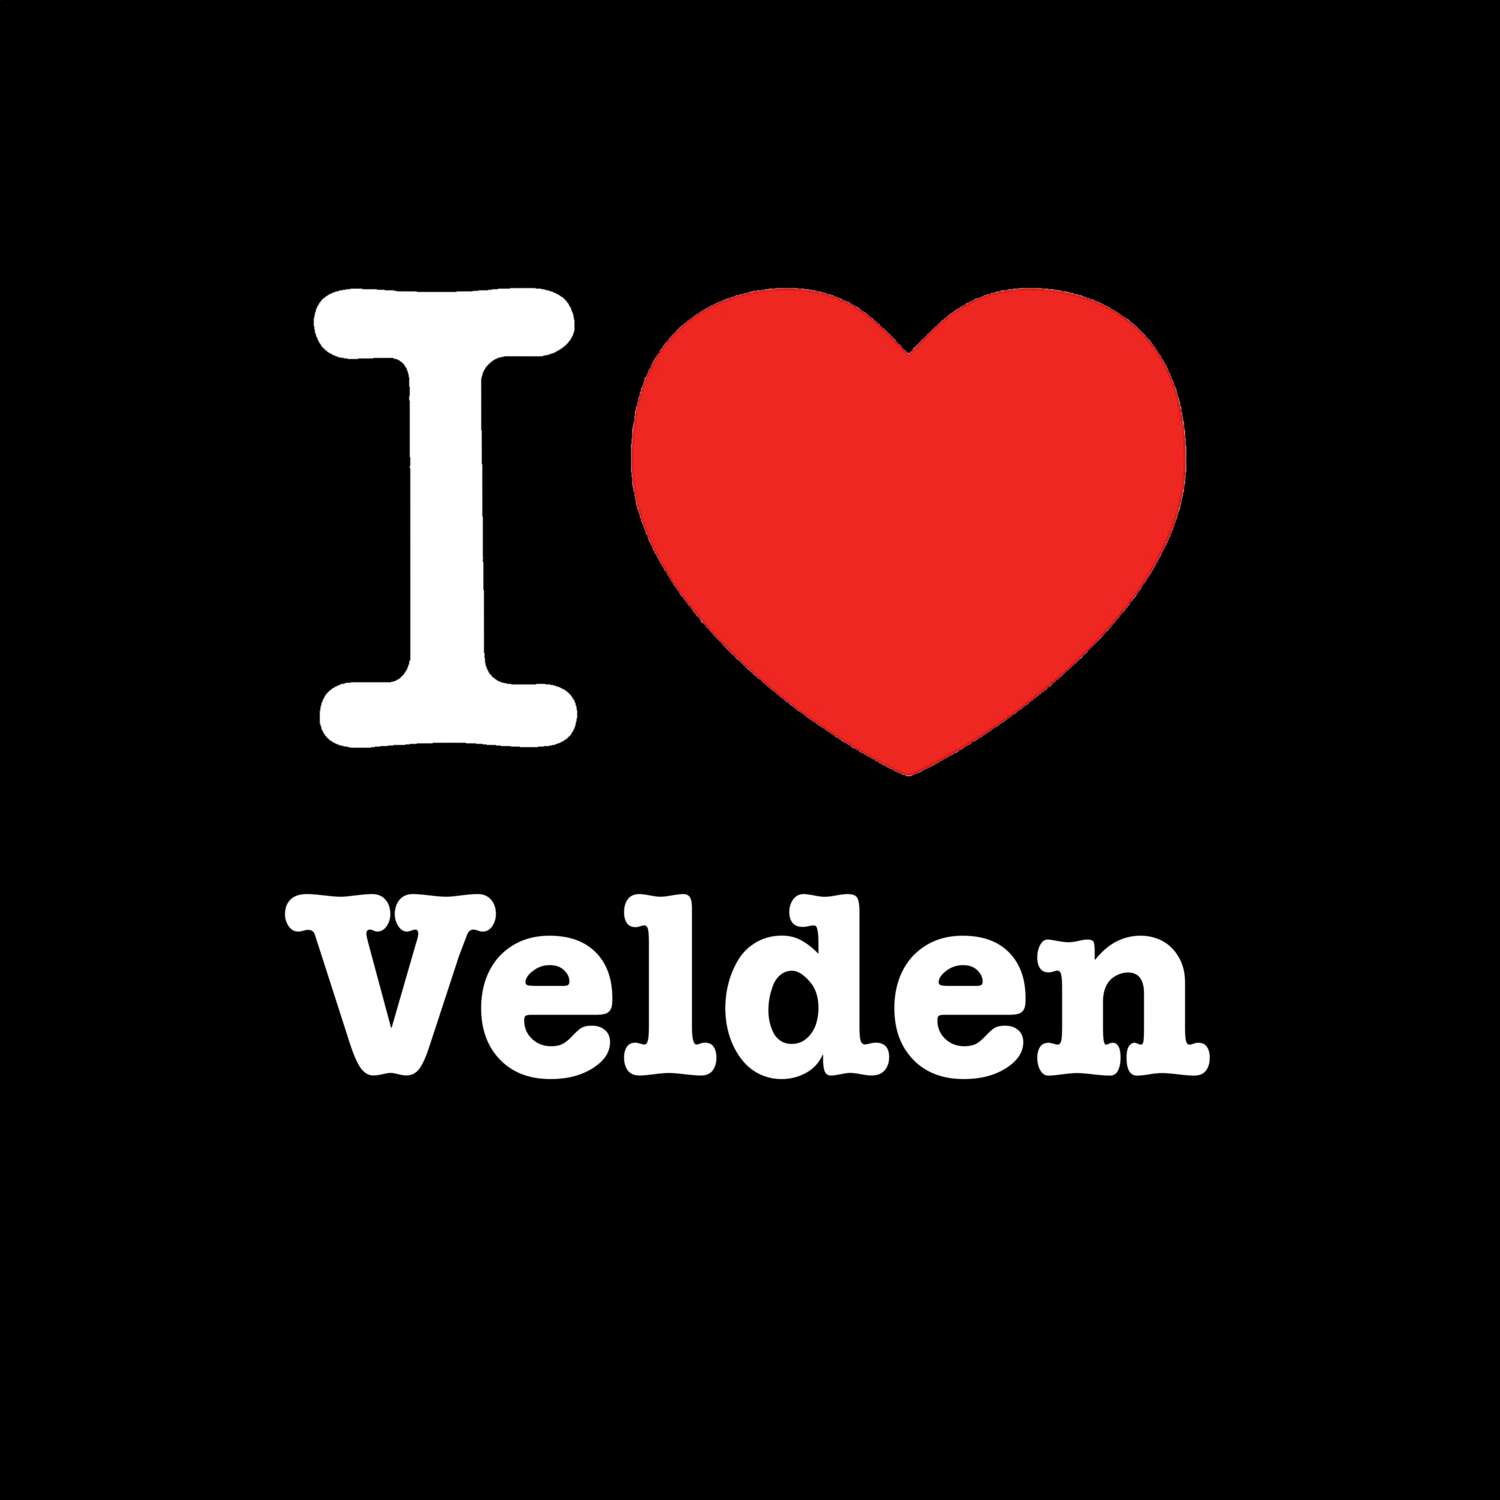 Velden T-Shirt »I love«